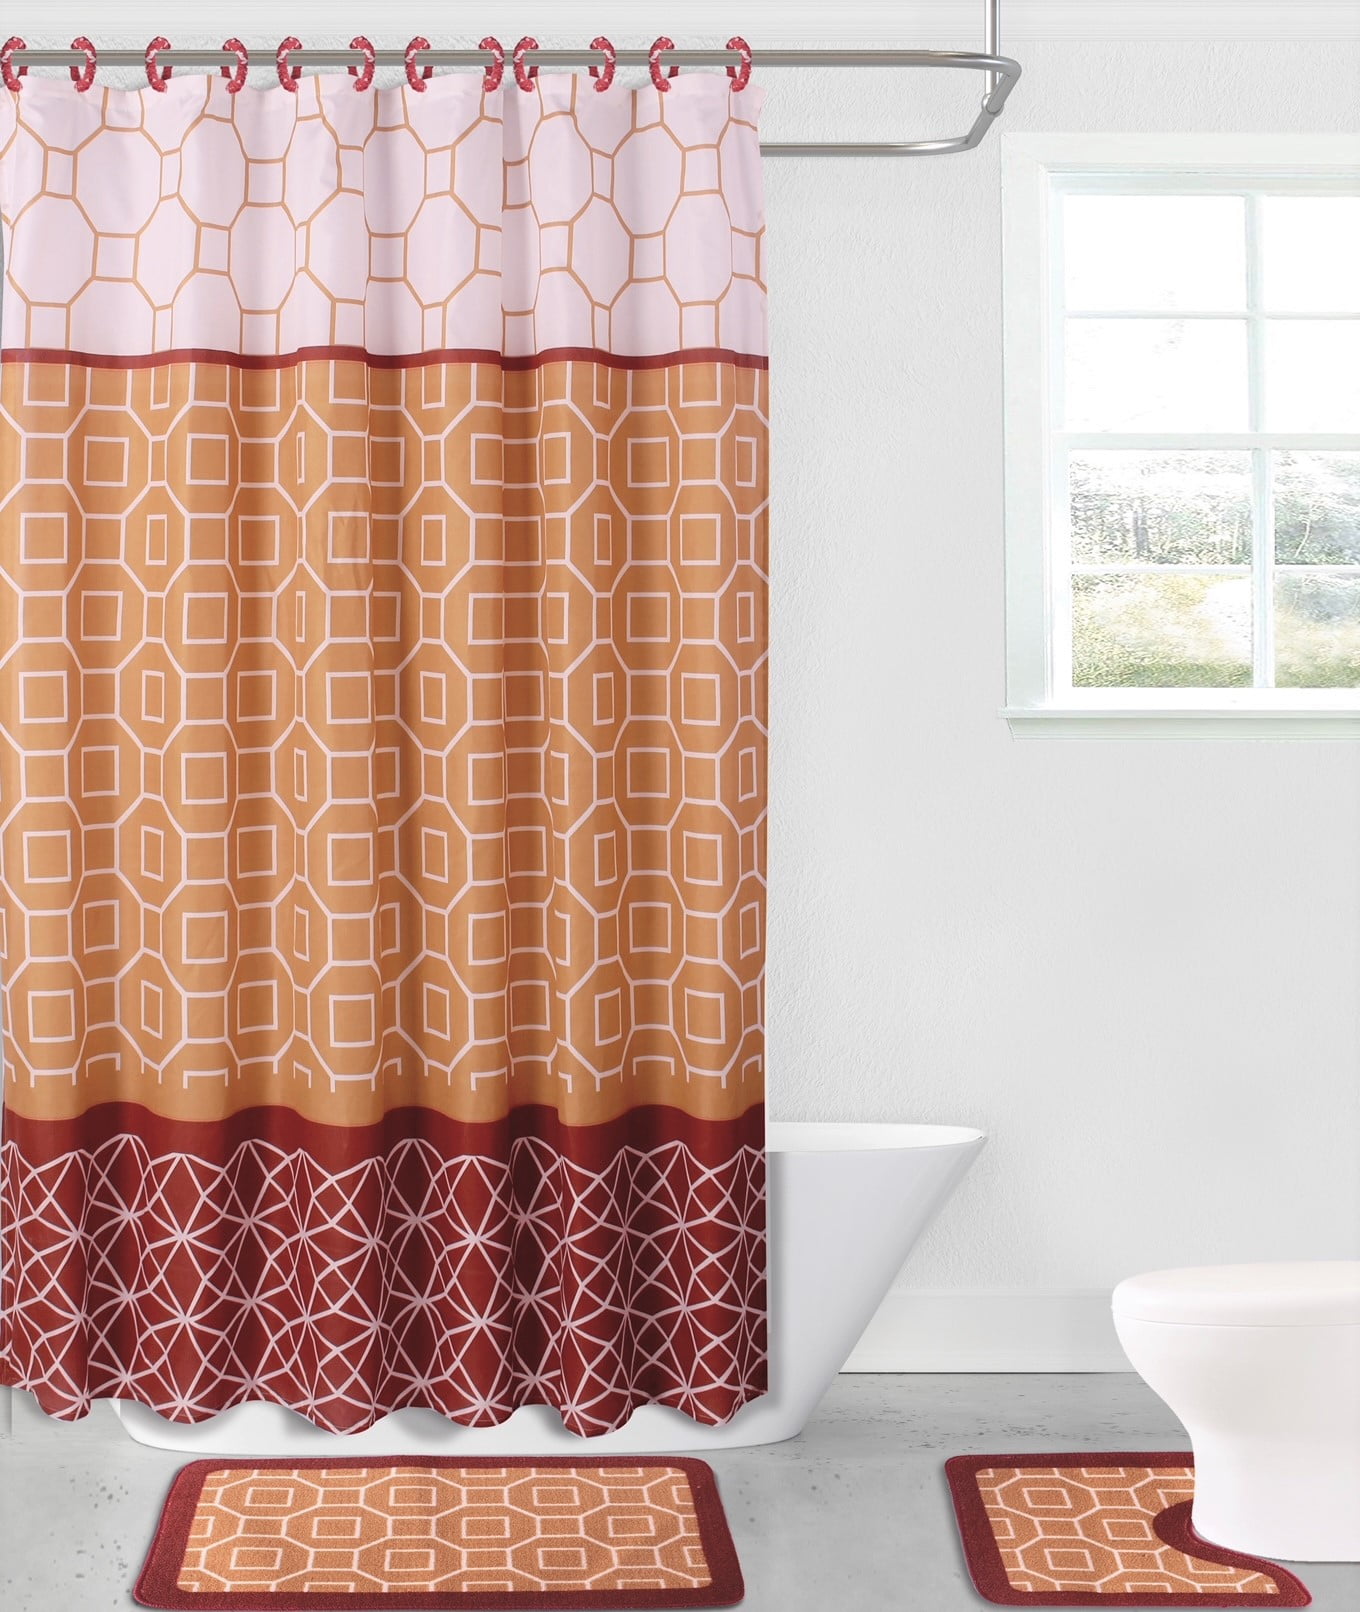 72X72" Abstract Shower Curtain Gold Debris Bathroom Fabric Bath Curtains Mat Rug 